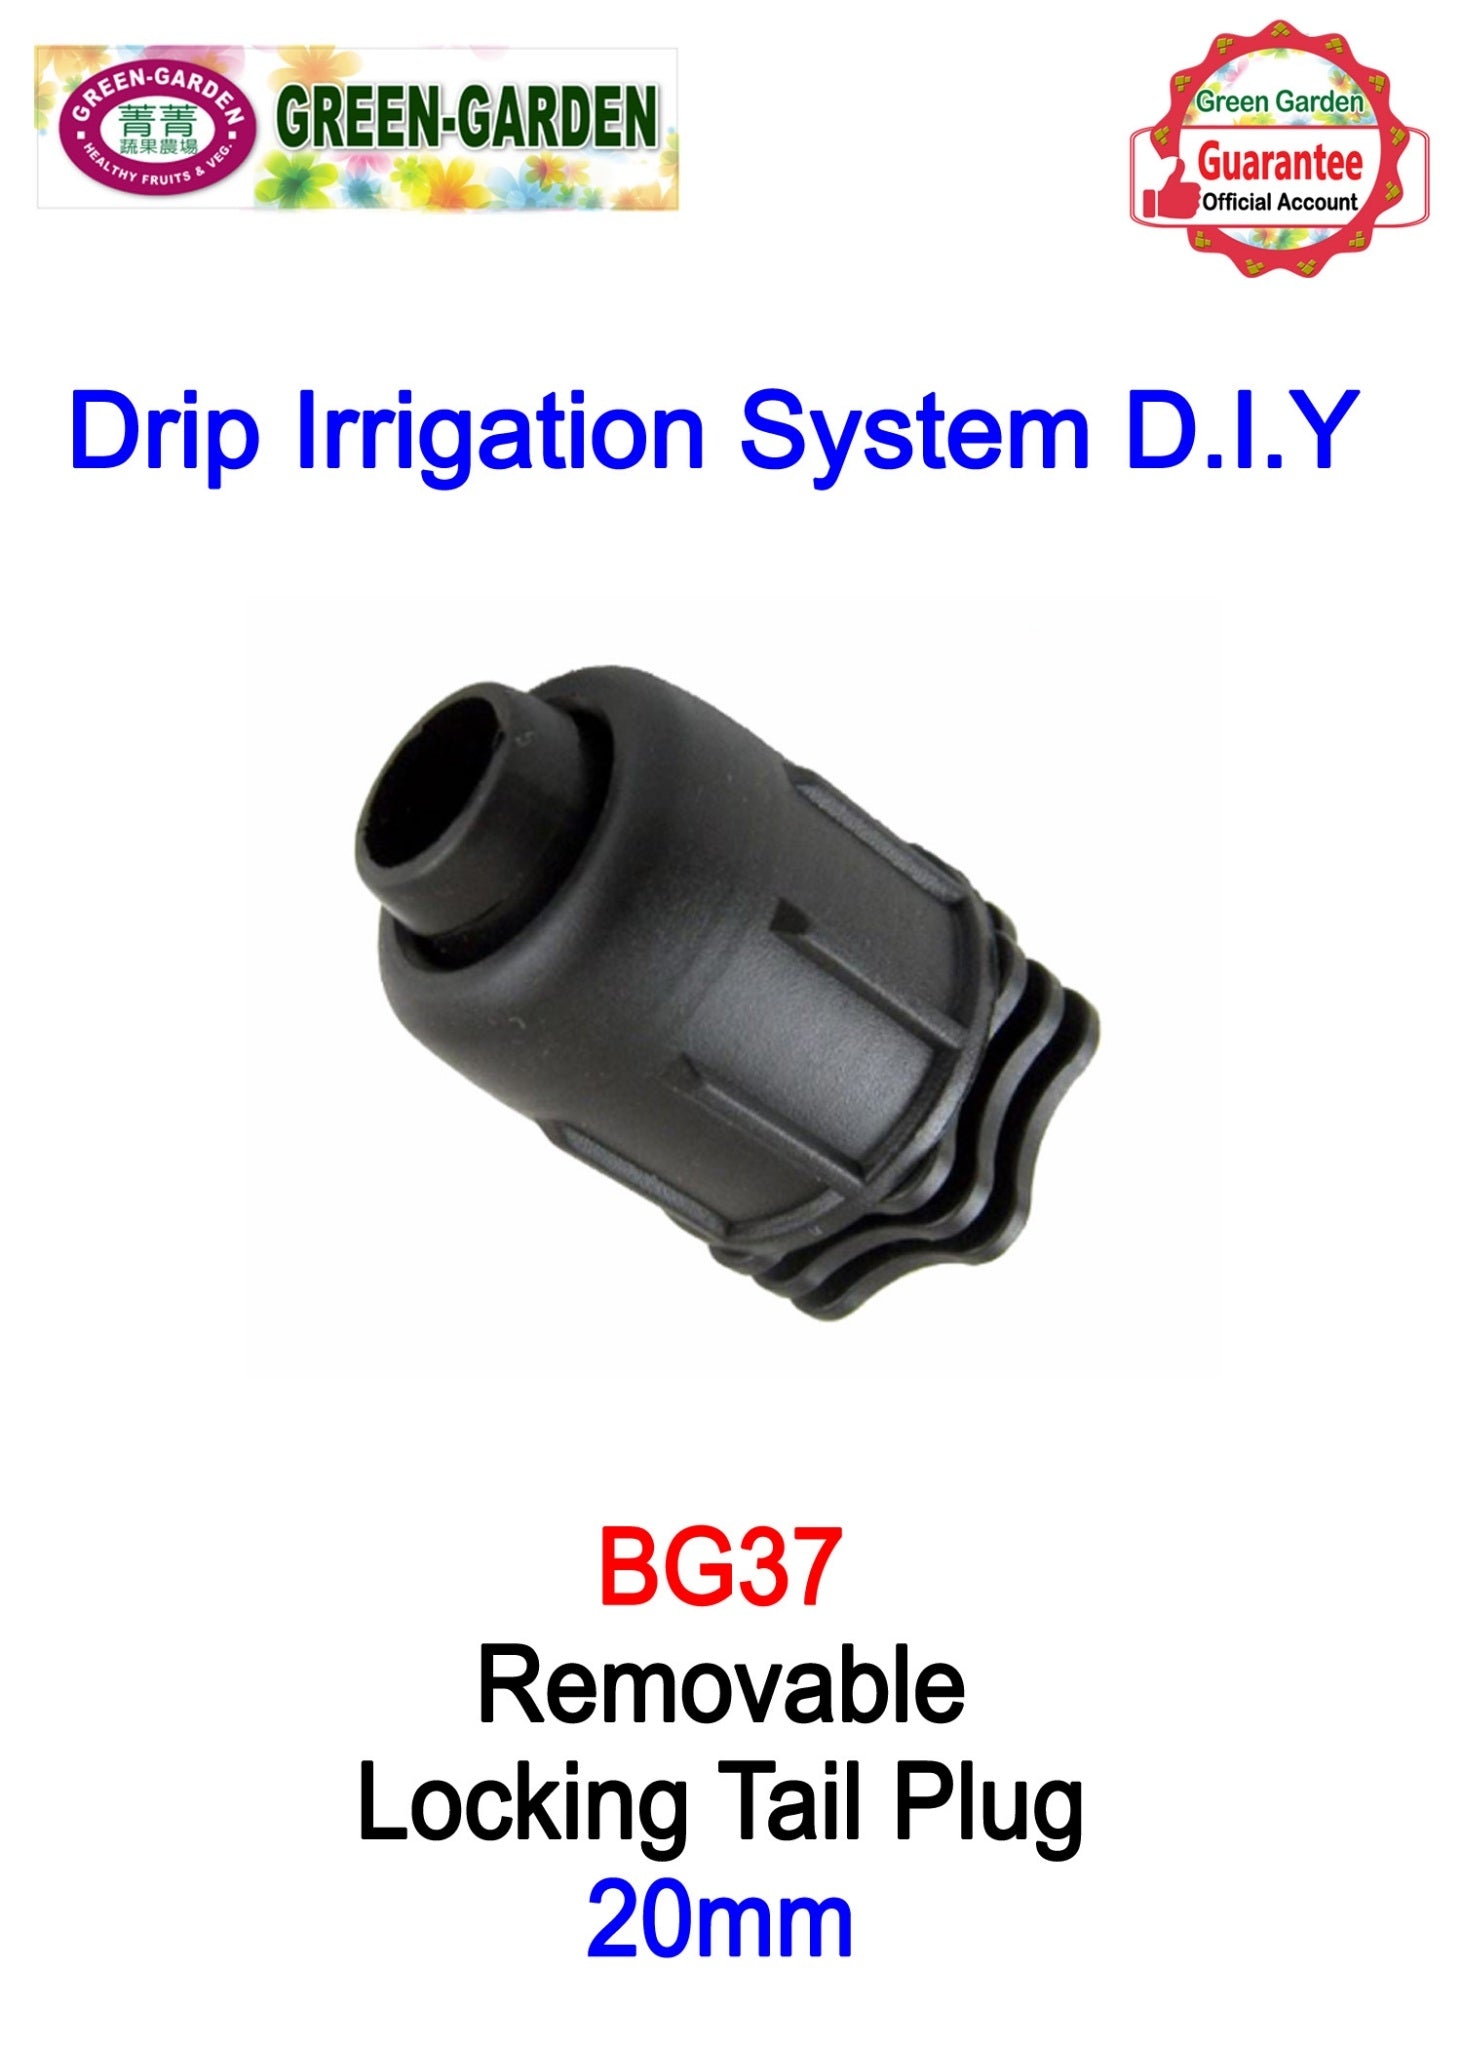 Drip Irrigation System - 20mm detachable locking tail plug BG37